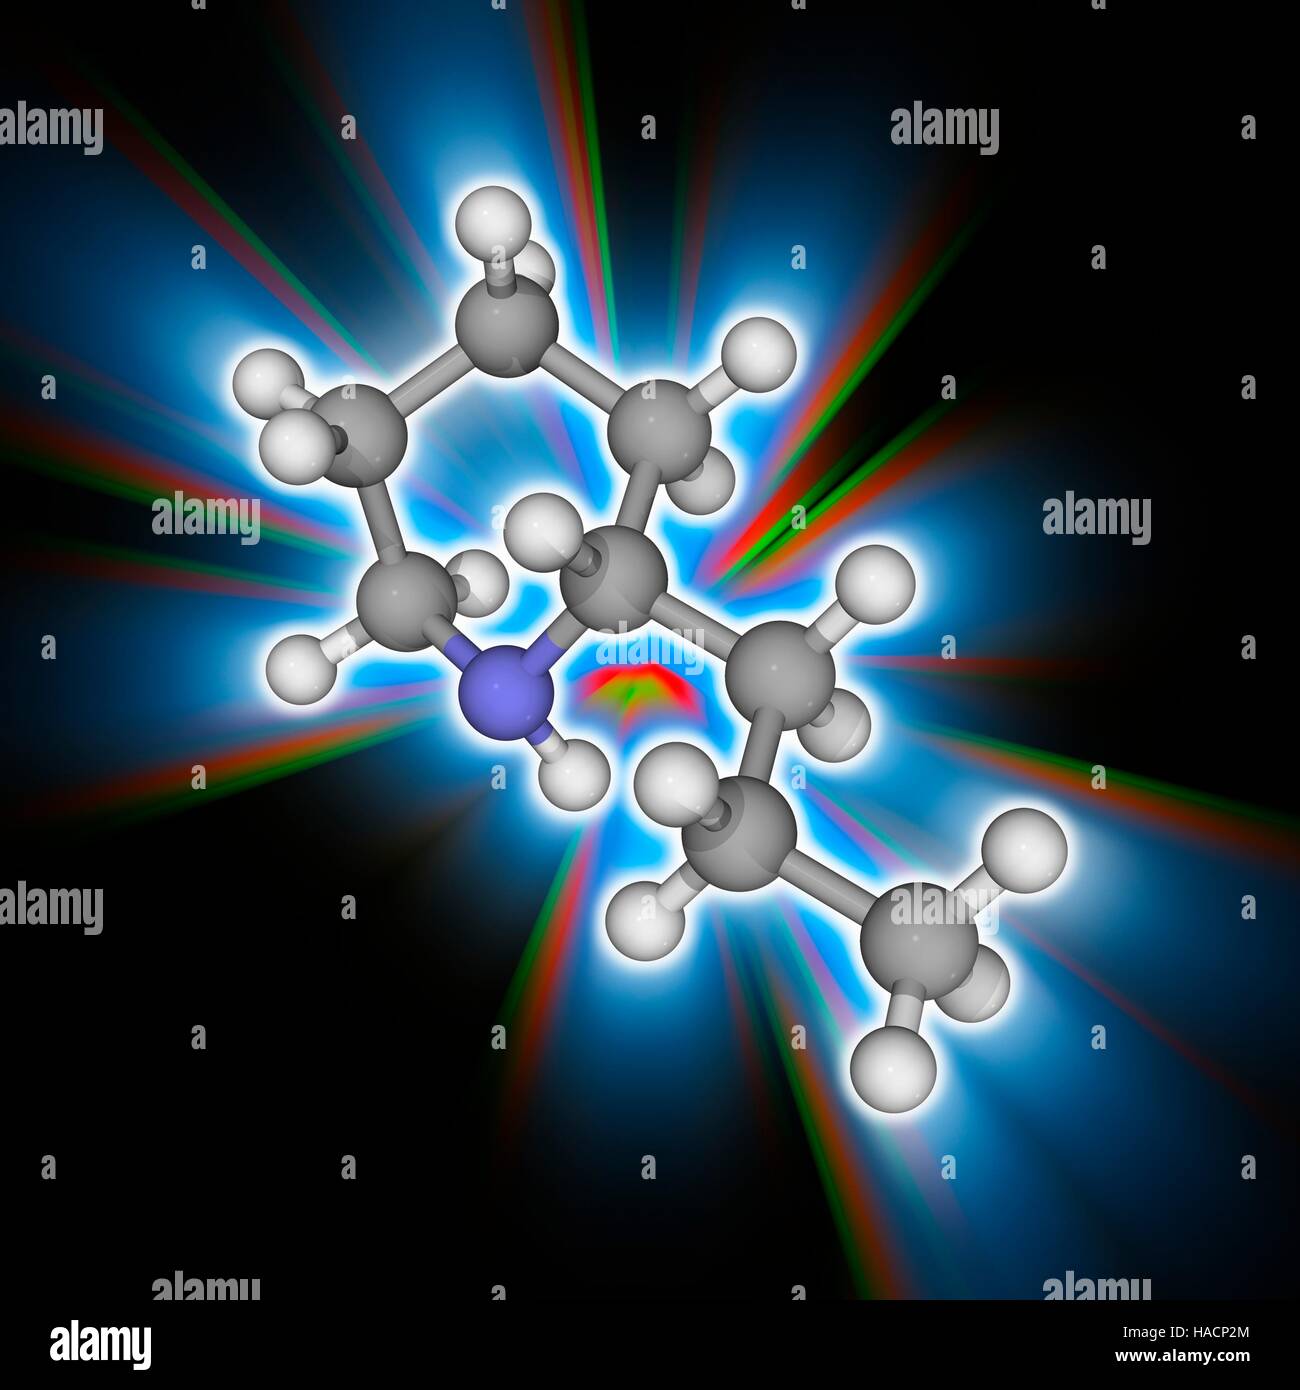 Coniine. Molekülmodell Nervengift Coniine (C8. H17. (N). gefunden in Poison Hemlock und die gelbe Schlauchpflanze, dieses tödlichen Giftes stört das periphere Nervensystem. Atome als Kugeln dargestellt werden und sind farblich gekennzeichnet: Kohlenstoff (grau), Wasserstoff (weiß) und Stickstoff (blau). Abbildung. Stockfoto